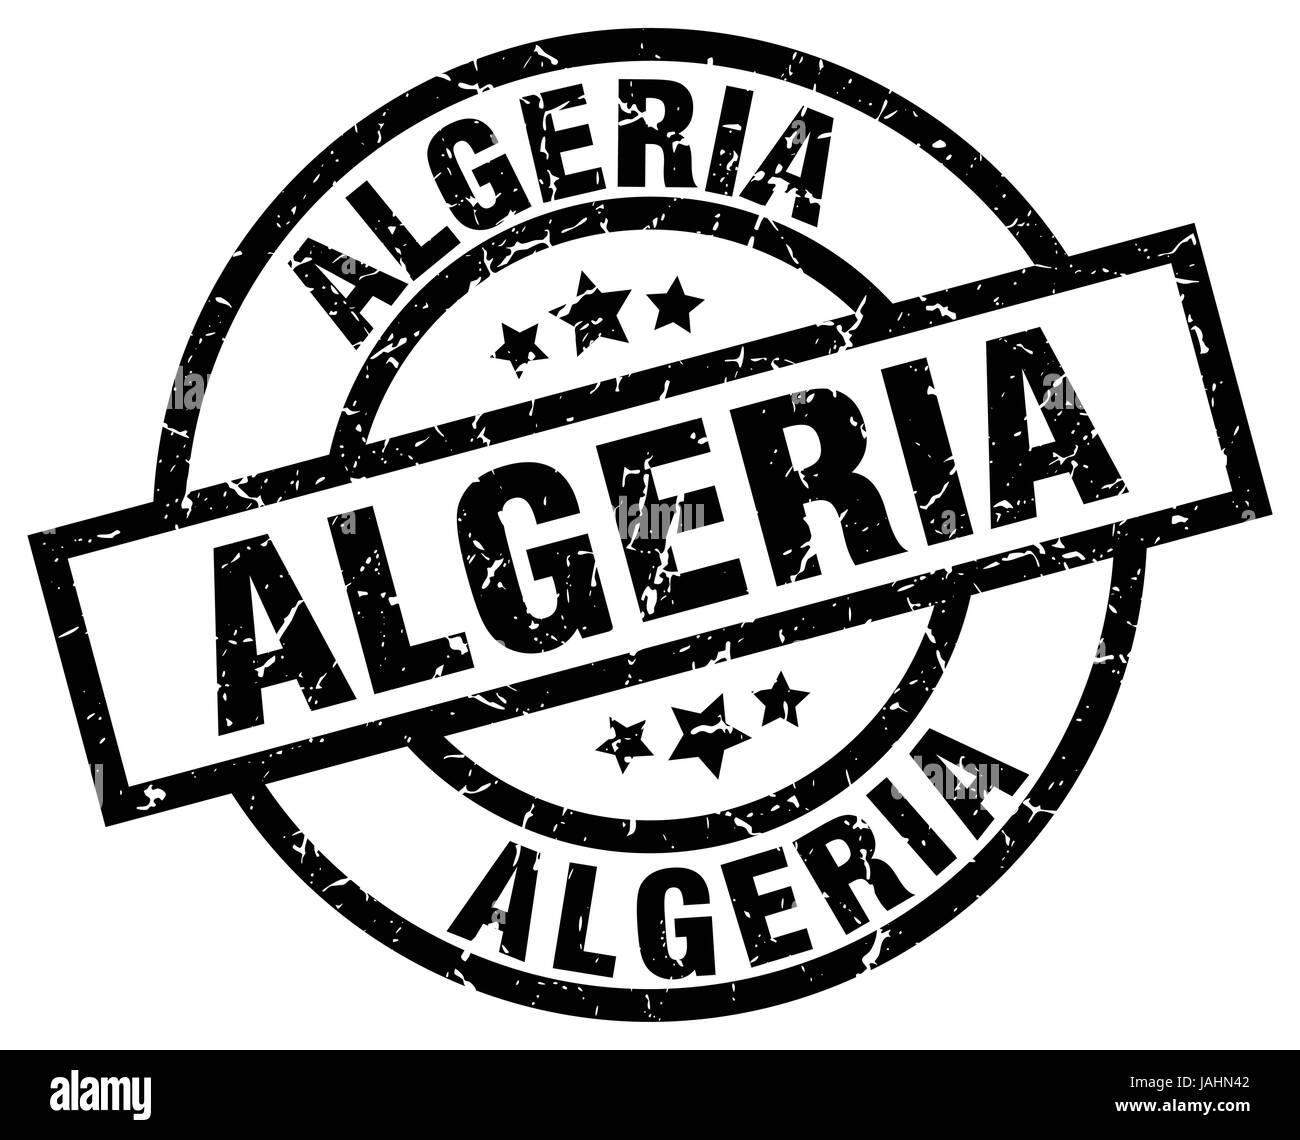 Algeria black round grunge stamp Stock Vector